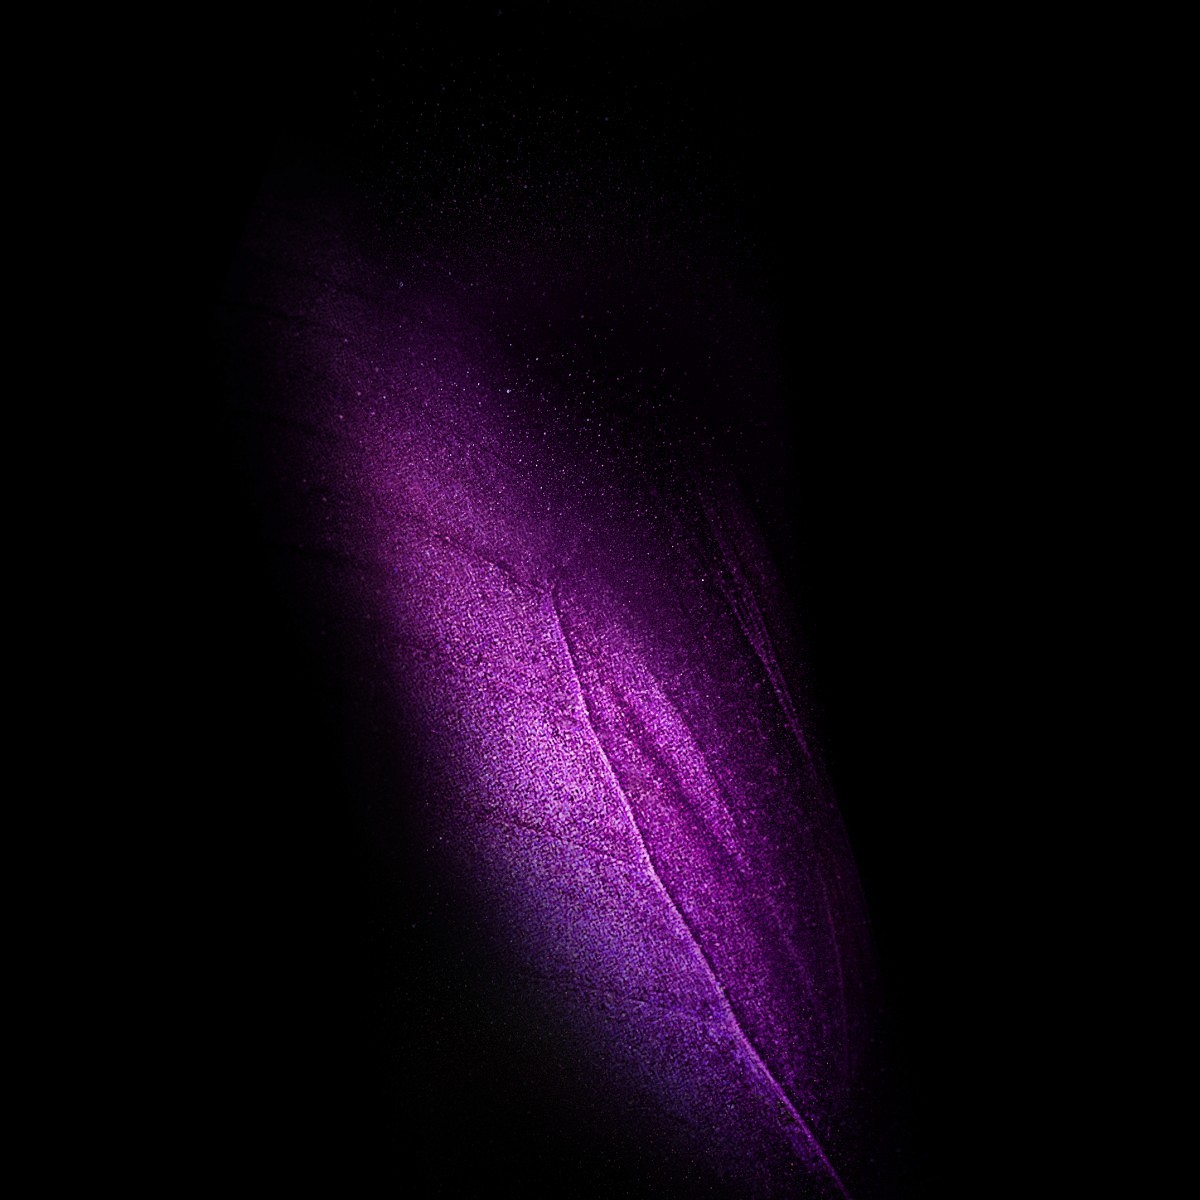 삼성 기본 배경 화면,제비꽃,보라색,검정,어둠,빛